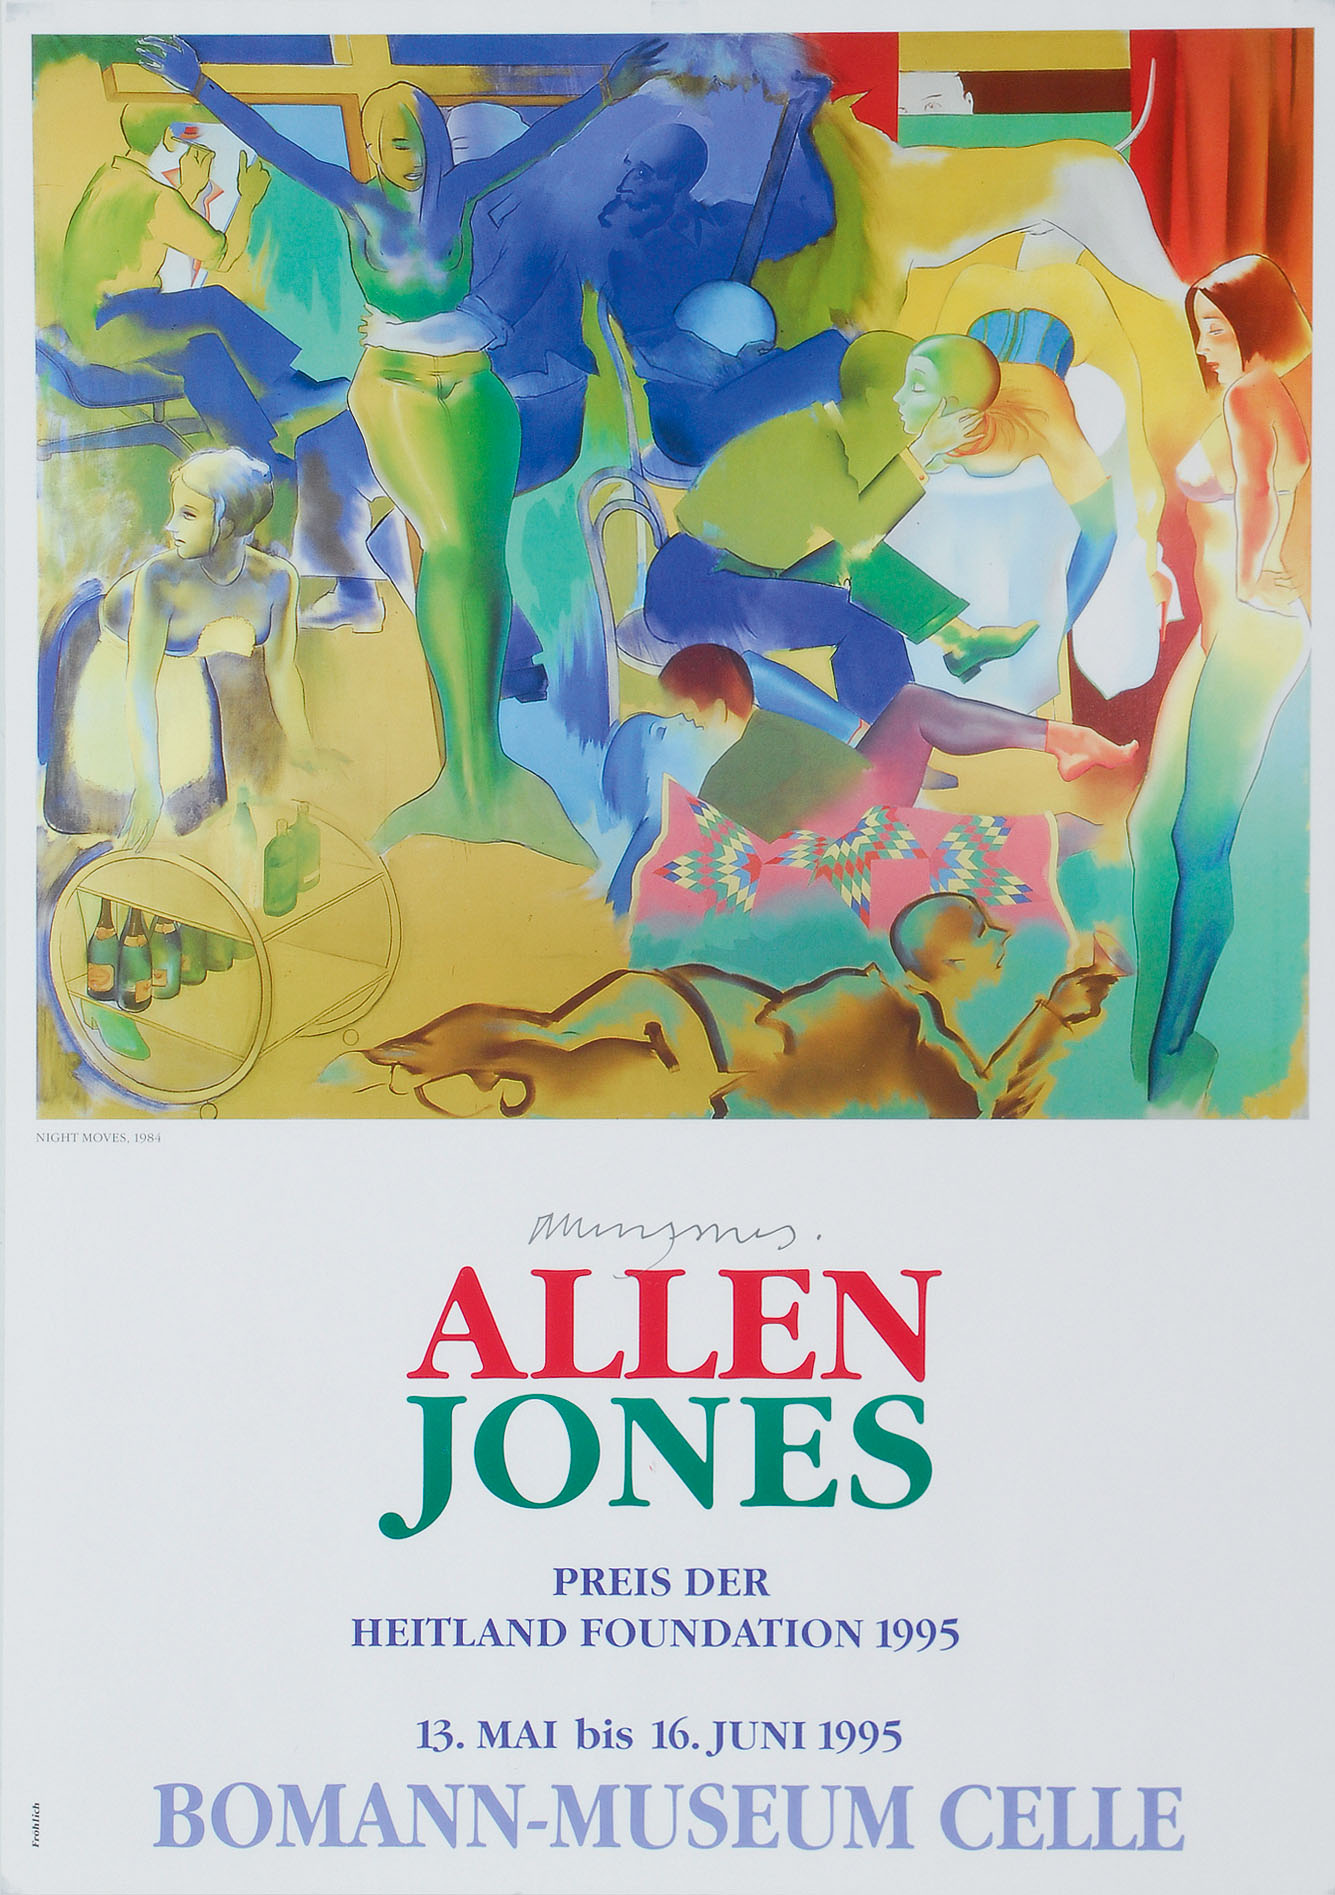 Hand-signed poster: Allen Jones - Boman Museum Celle (1995)